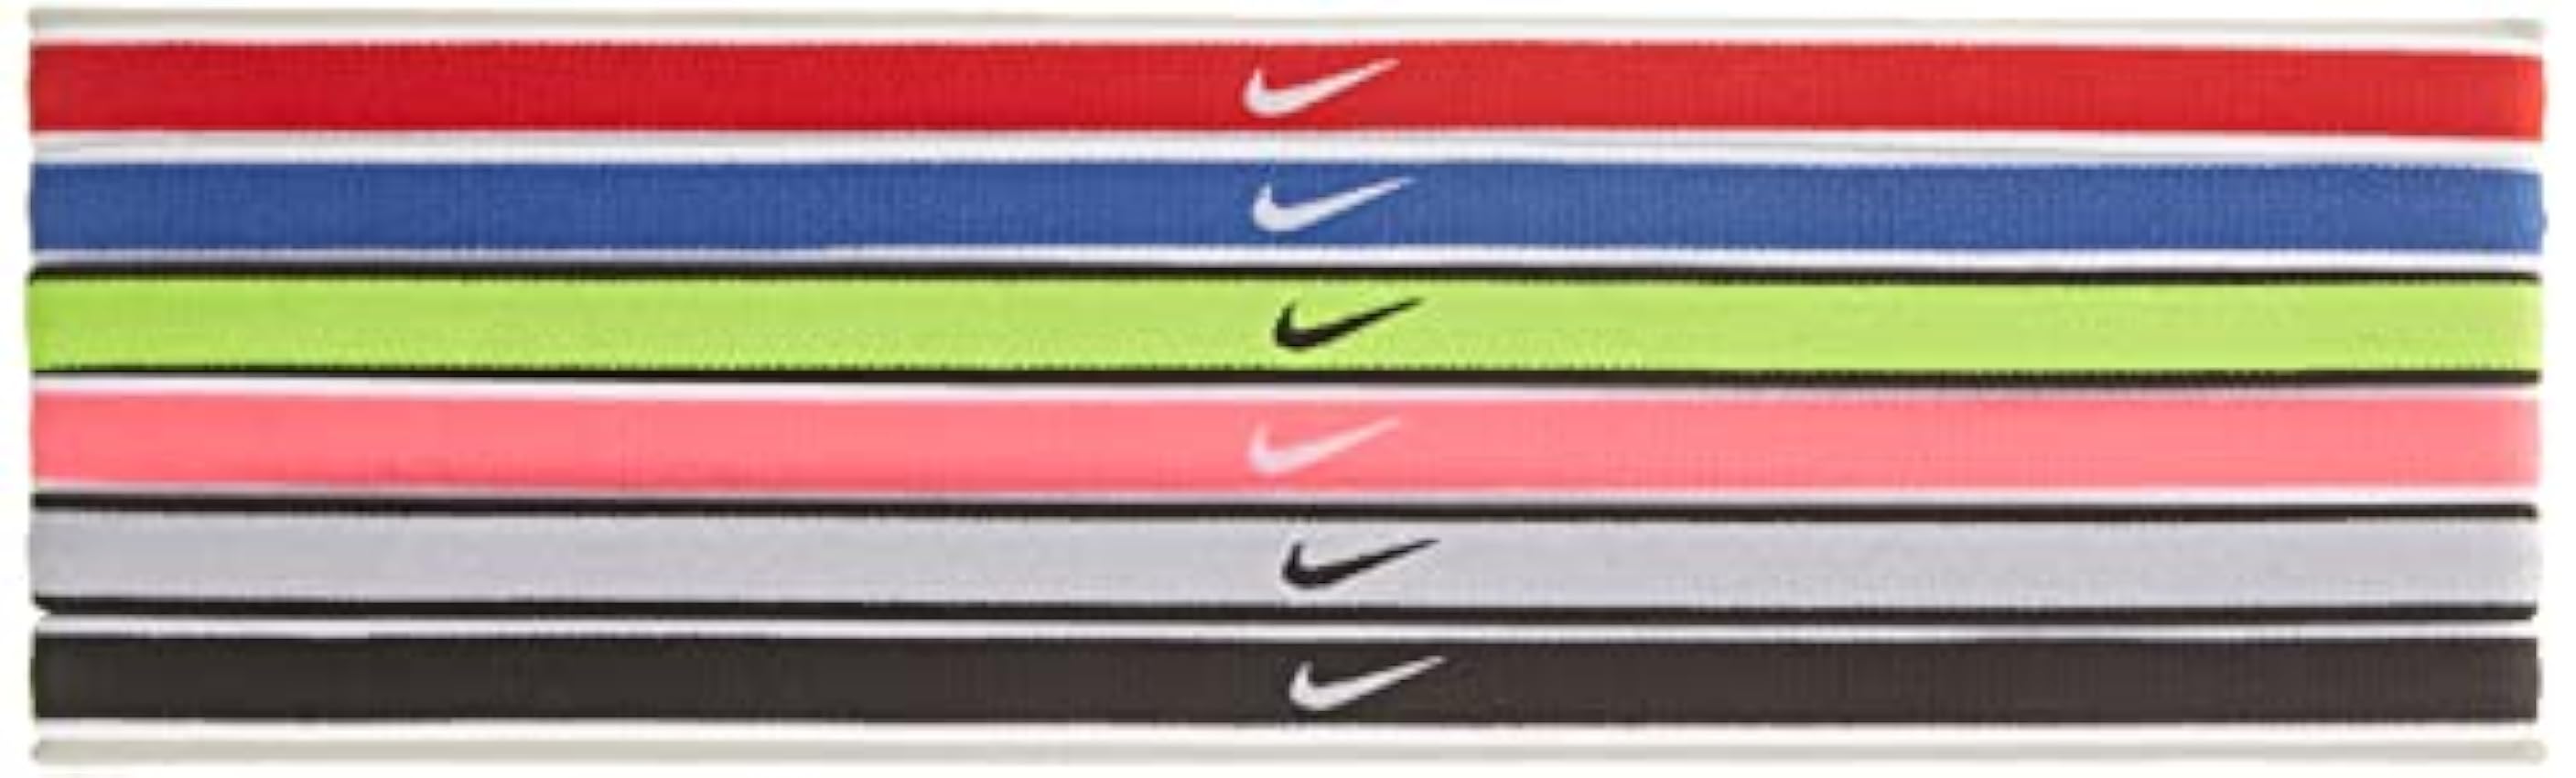 Nike Swoosh Lot de 6 Bandeaux pour Femme Fjsk9qp8